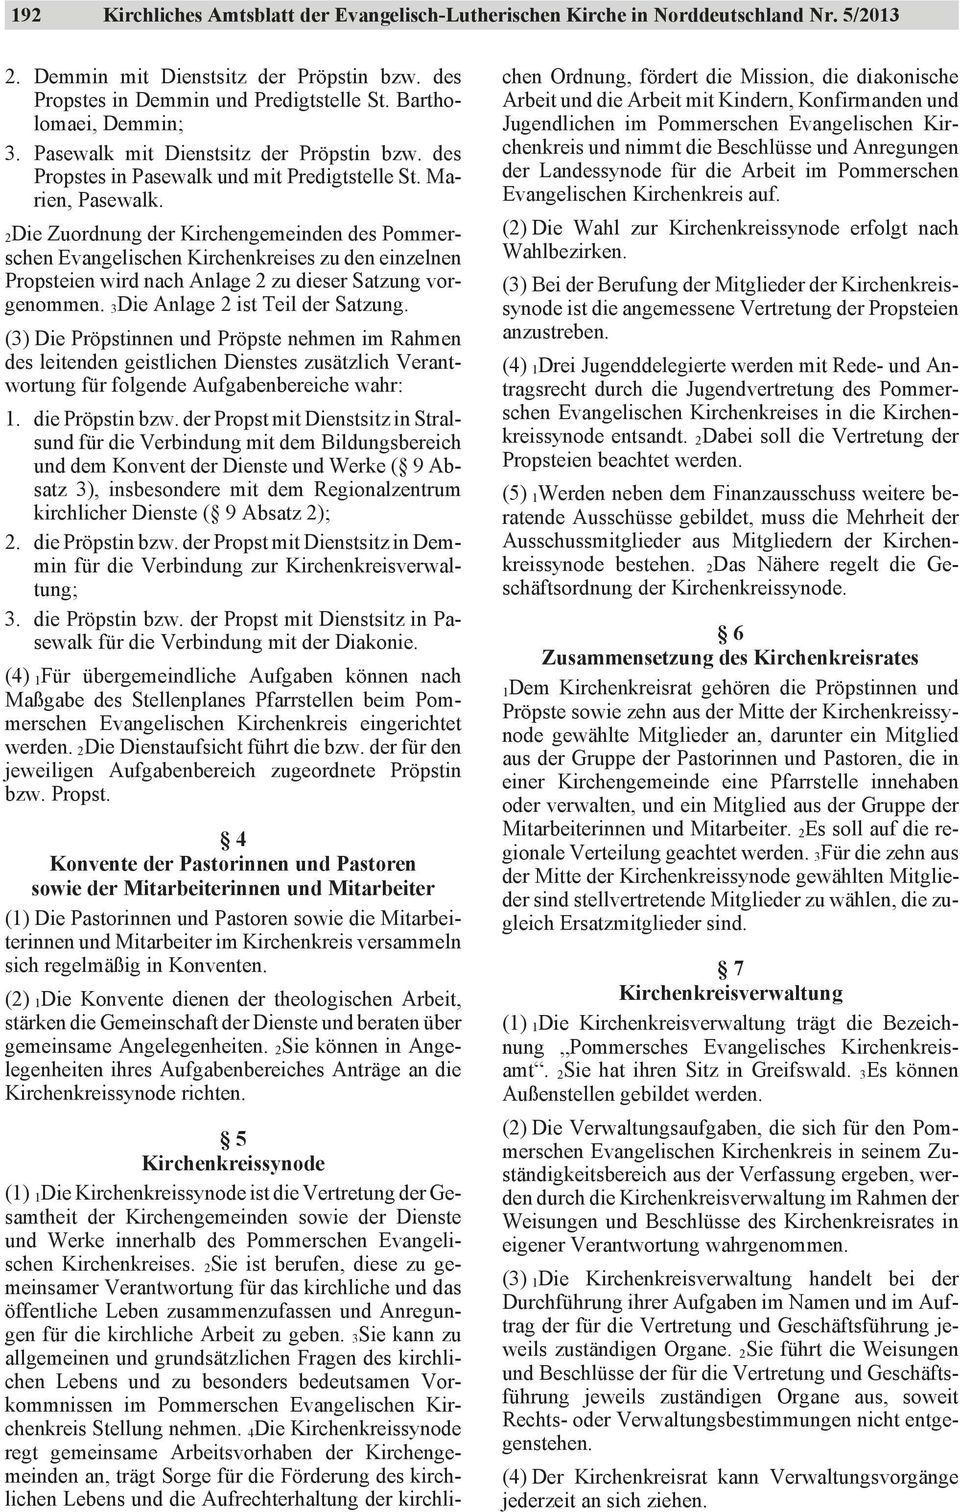 2Die Zuordnung der Kirchengemeinden des Pommerschen Evangelischen Kirchenkreises zu den einzelnen Propsteien wird nach Anlage 2 zu dieser Satzung vorgenommen. 3Die Anlage 2 ist Teil der Satzung.